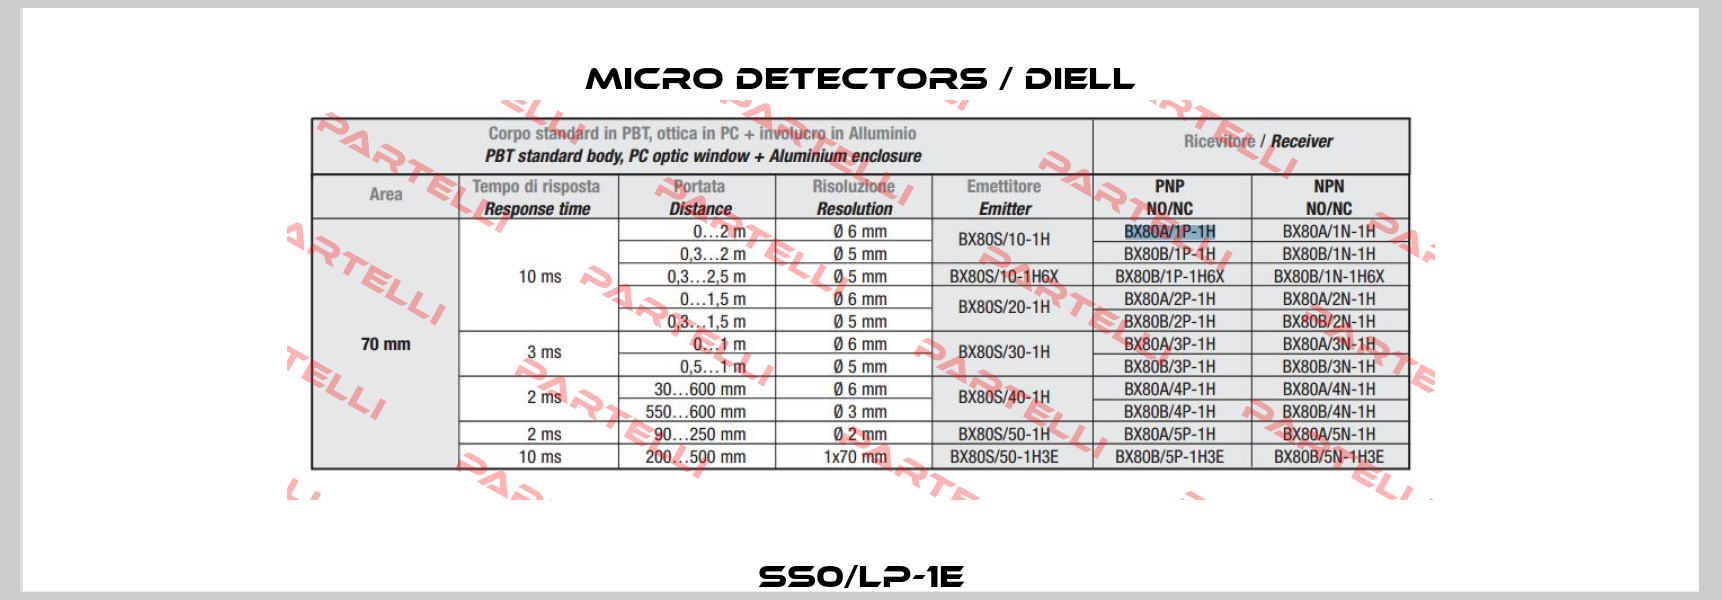 SS0/LP-1E Micro Detectors / Diell